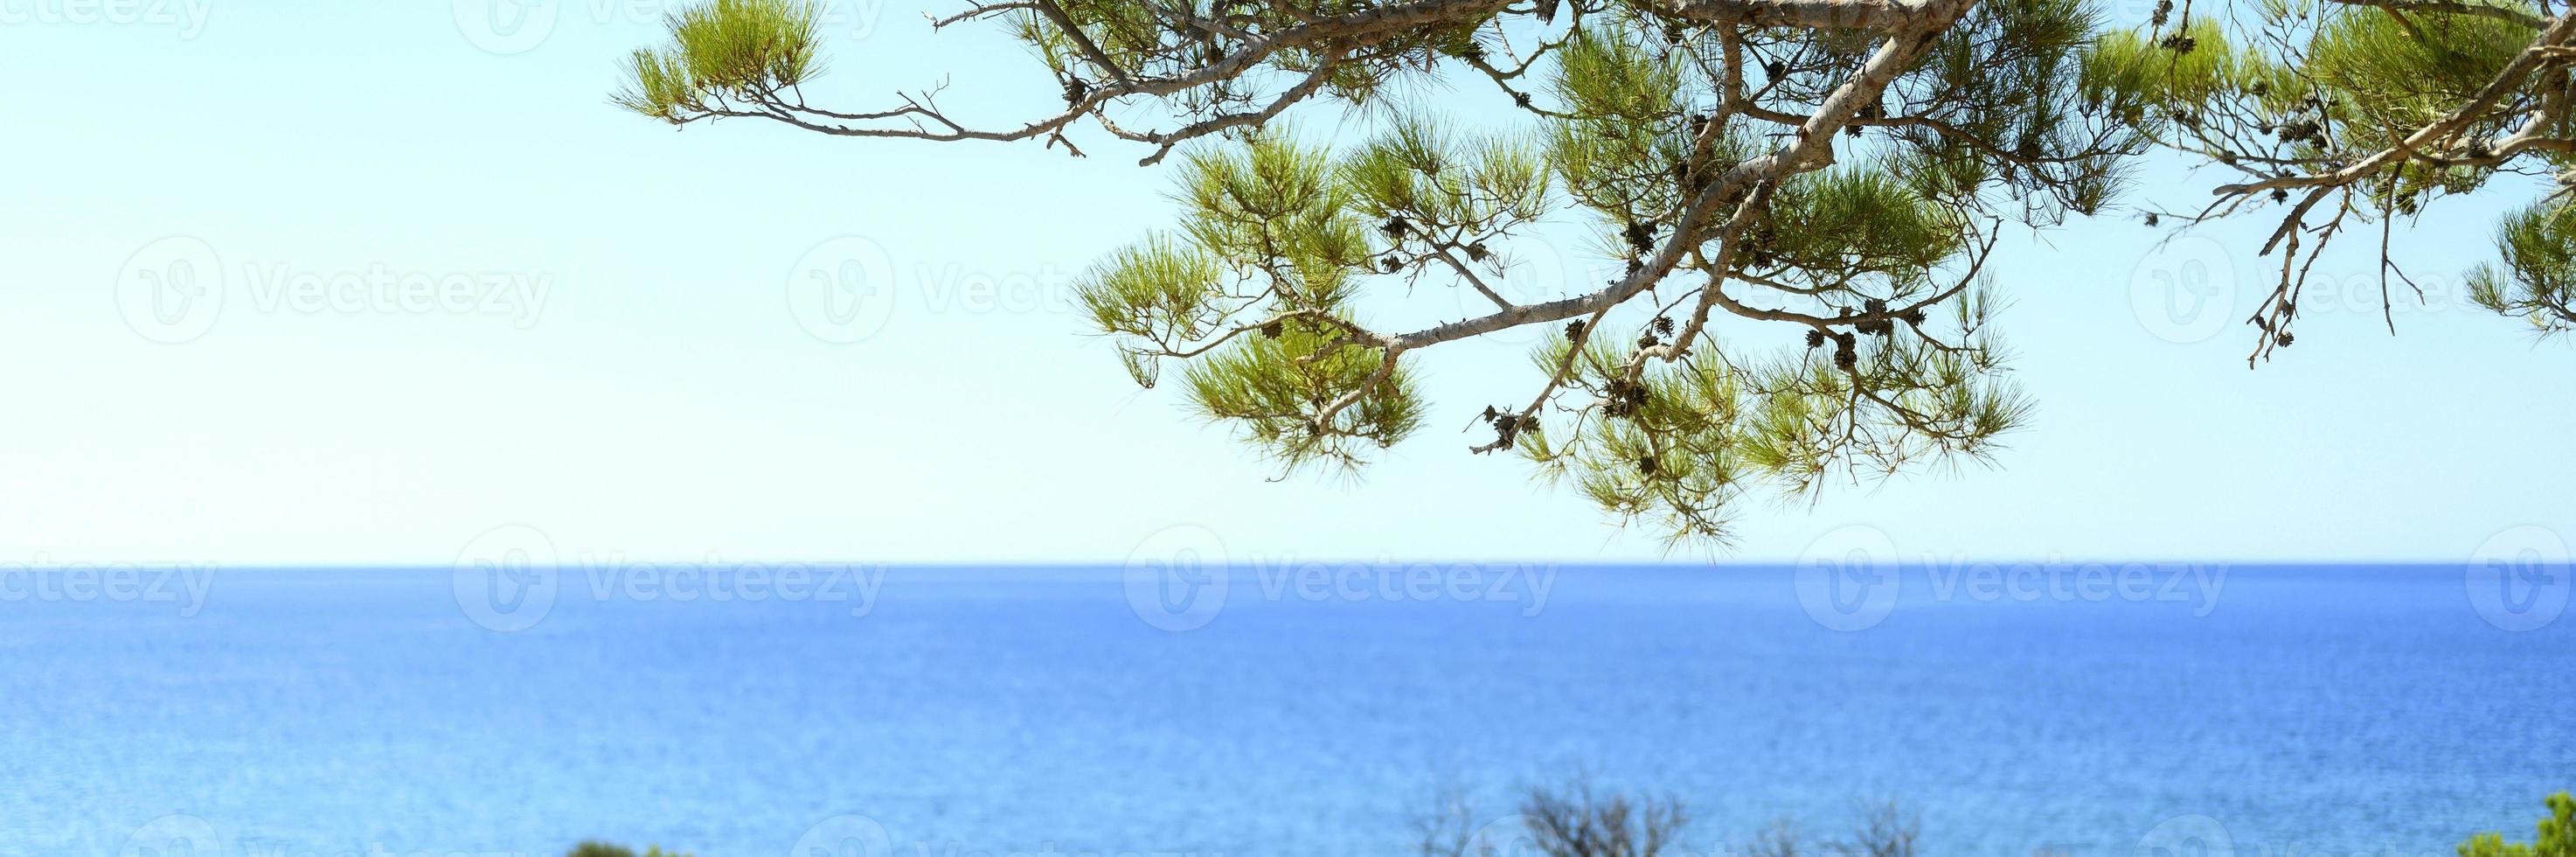 Blick auf das Meer durch den Kiefernzweig und die grünen Büsche foto